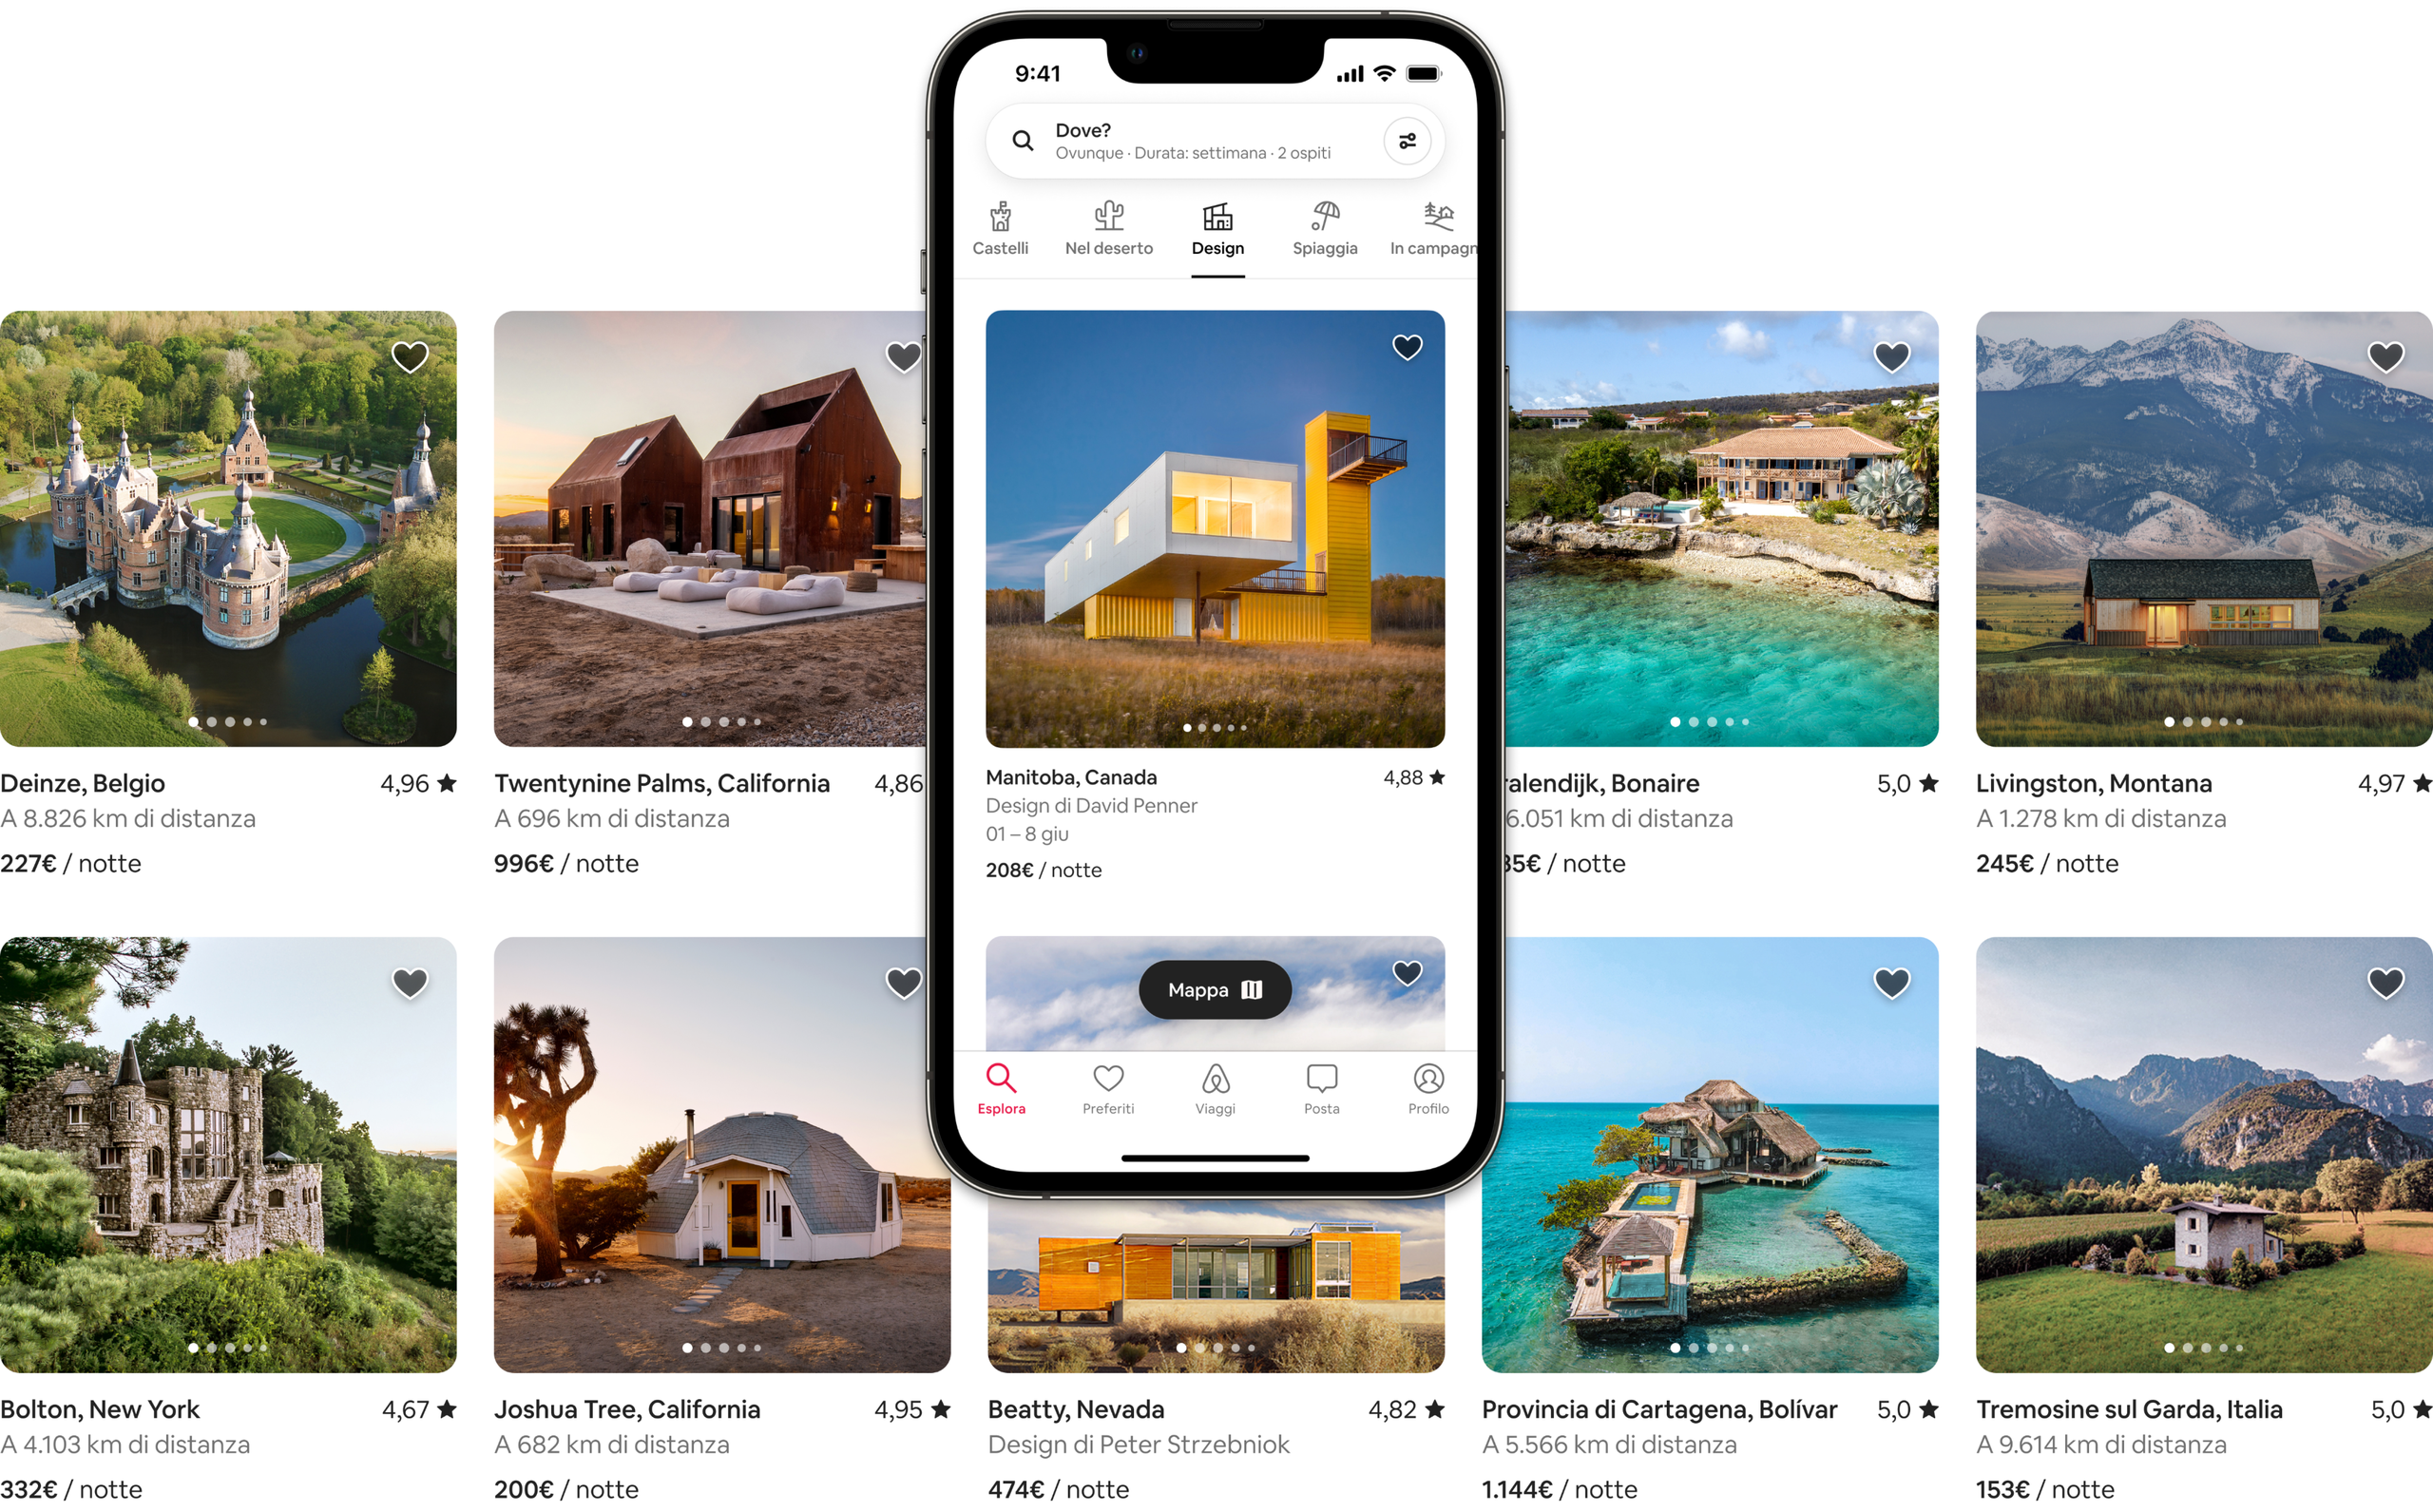 Due file di bellissime foto mostrano gli alloggi nelle categorie Castelli, Nel deserto, Design, Spiaggia e In campagna di Airbnb. Uno degli annunci viene mostrato sullo schermo di un telefono cellulare per presentarne l'aspetto nell'app di Airbnb.